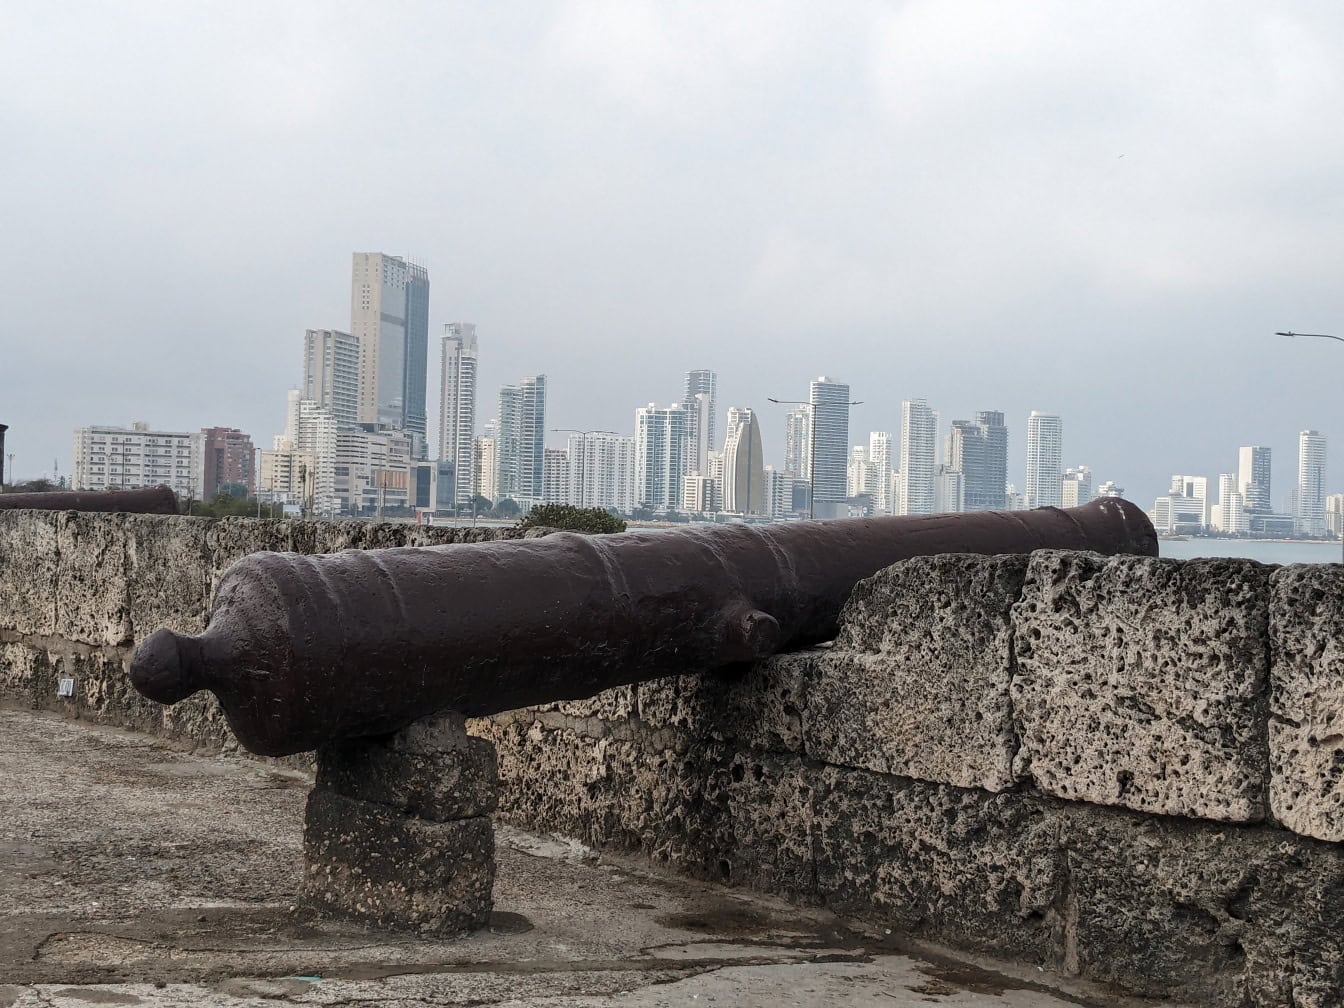 Středověké dělo na kamenné zdi s městem Cartagena v Kolumbii v pozadí